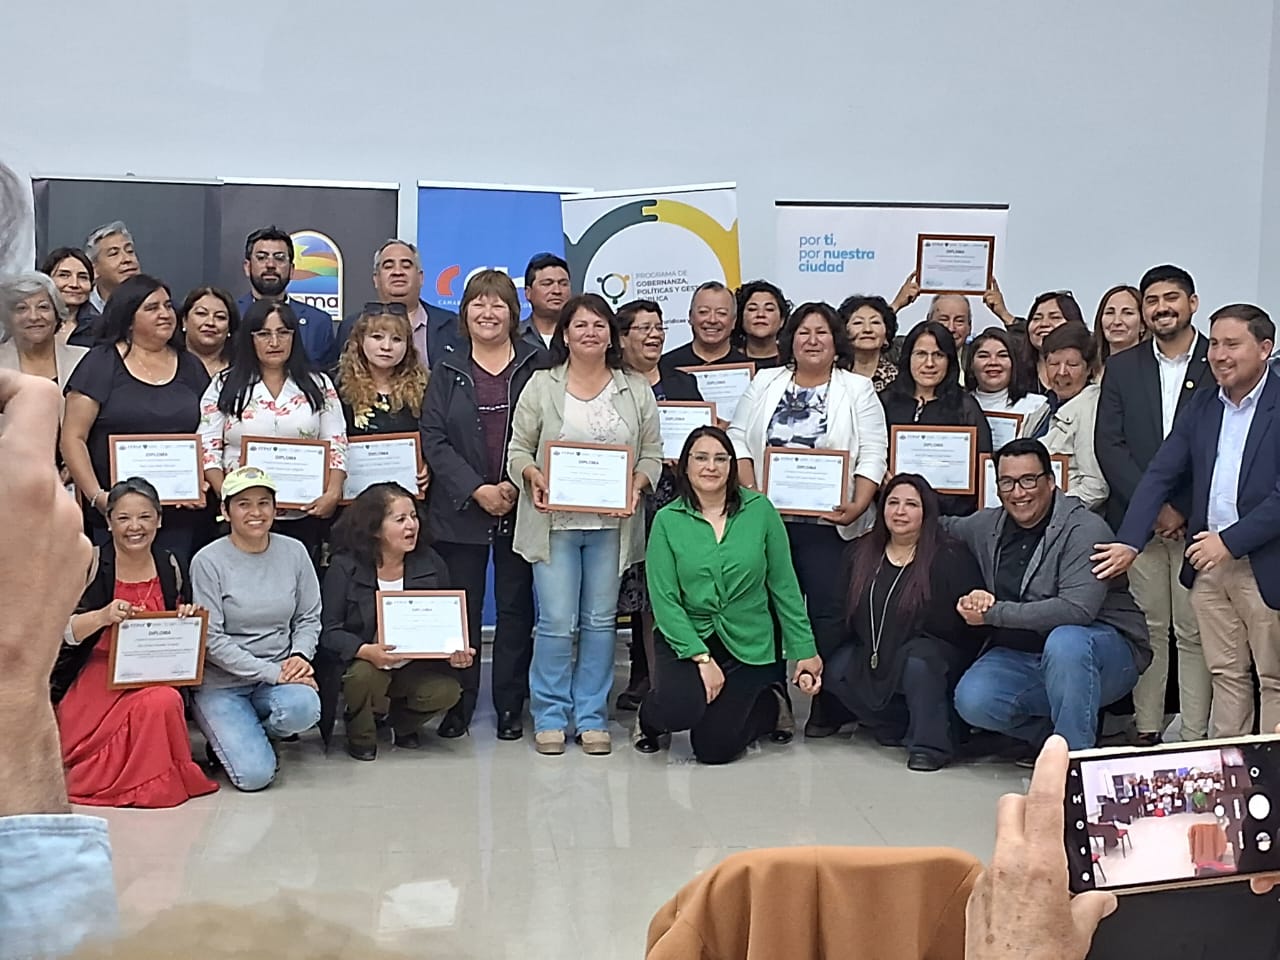 39 dirigentes sociales de la Provincia de Huasco culminan con éxito curso para fortalecer su gestión territorial